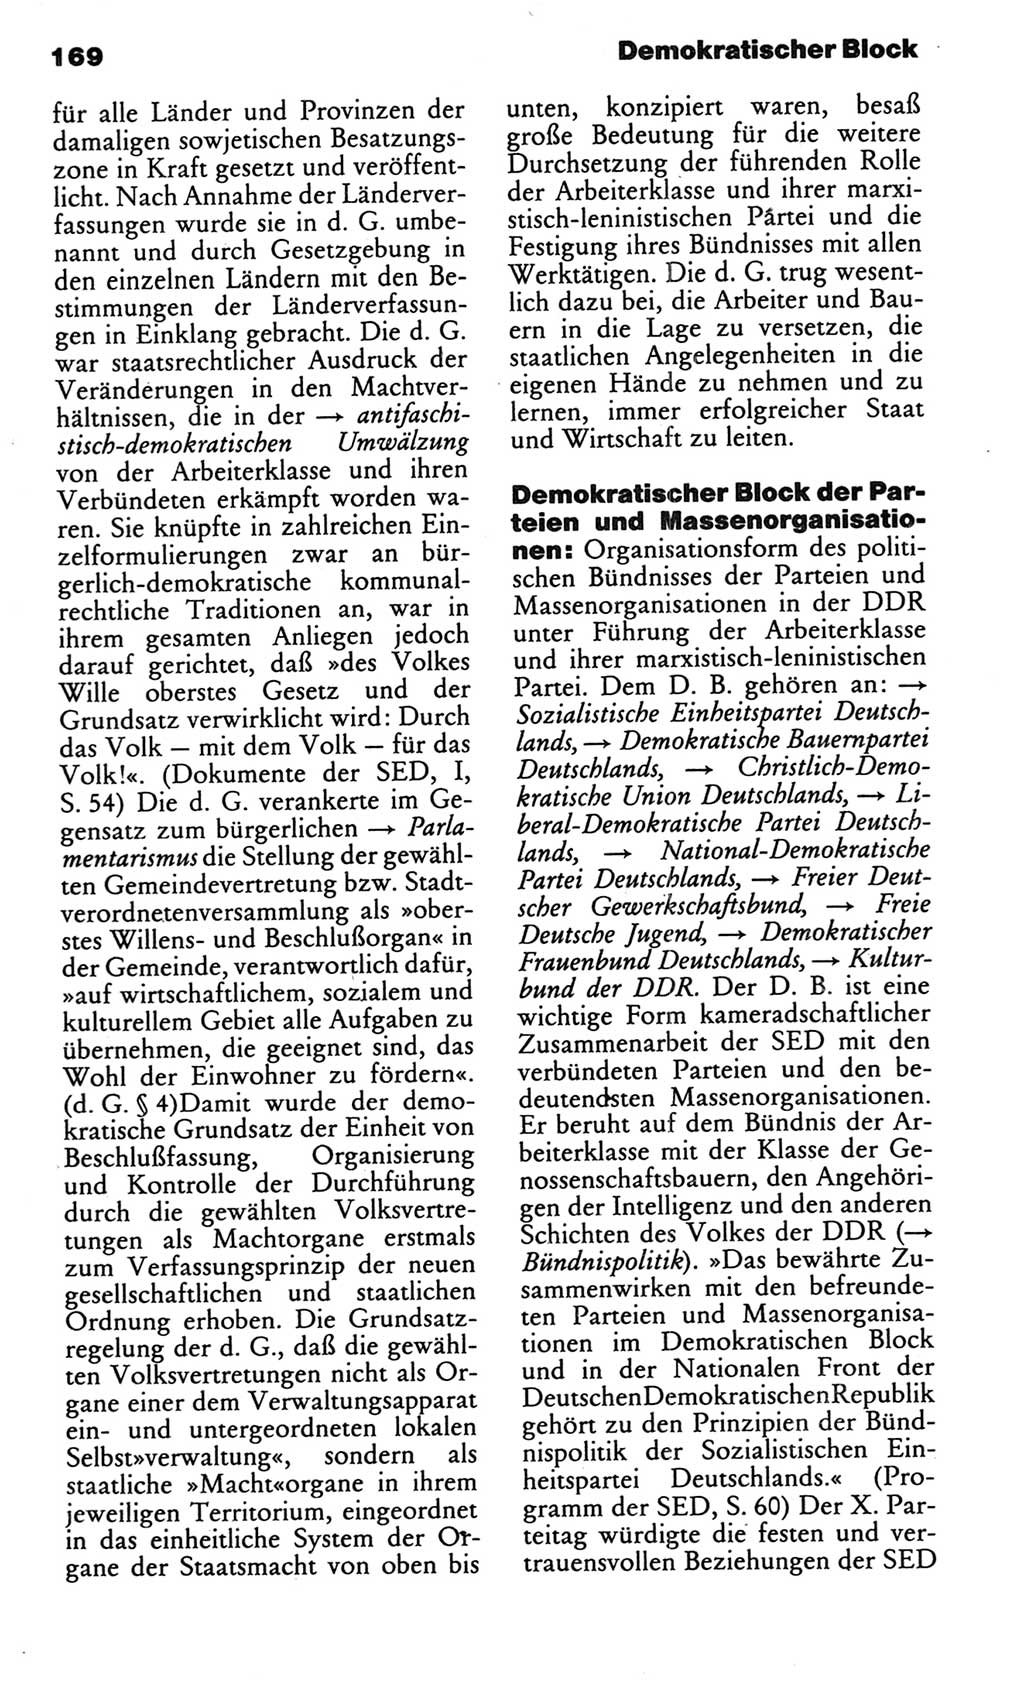 Kleines politisches Wörterbuch [Deutsche Demokratische Republik (DDR)] 1983, Seite 169 (Kl. pol. Wb. DDR 1983, S. 169)